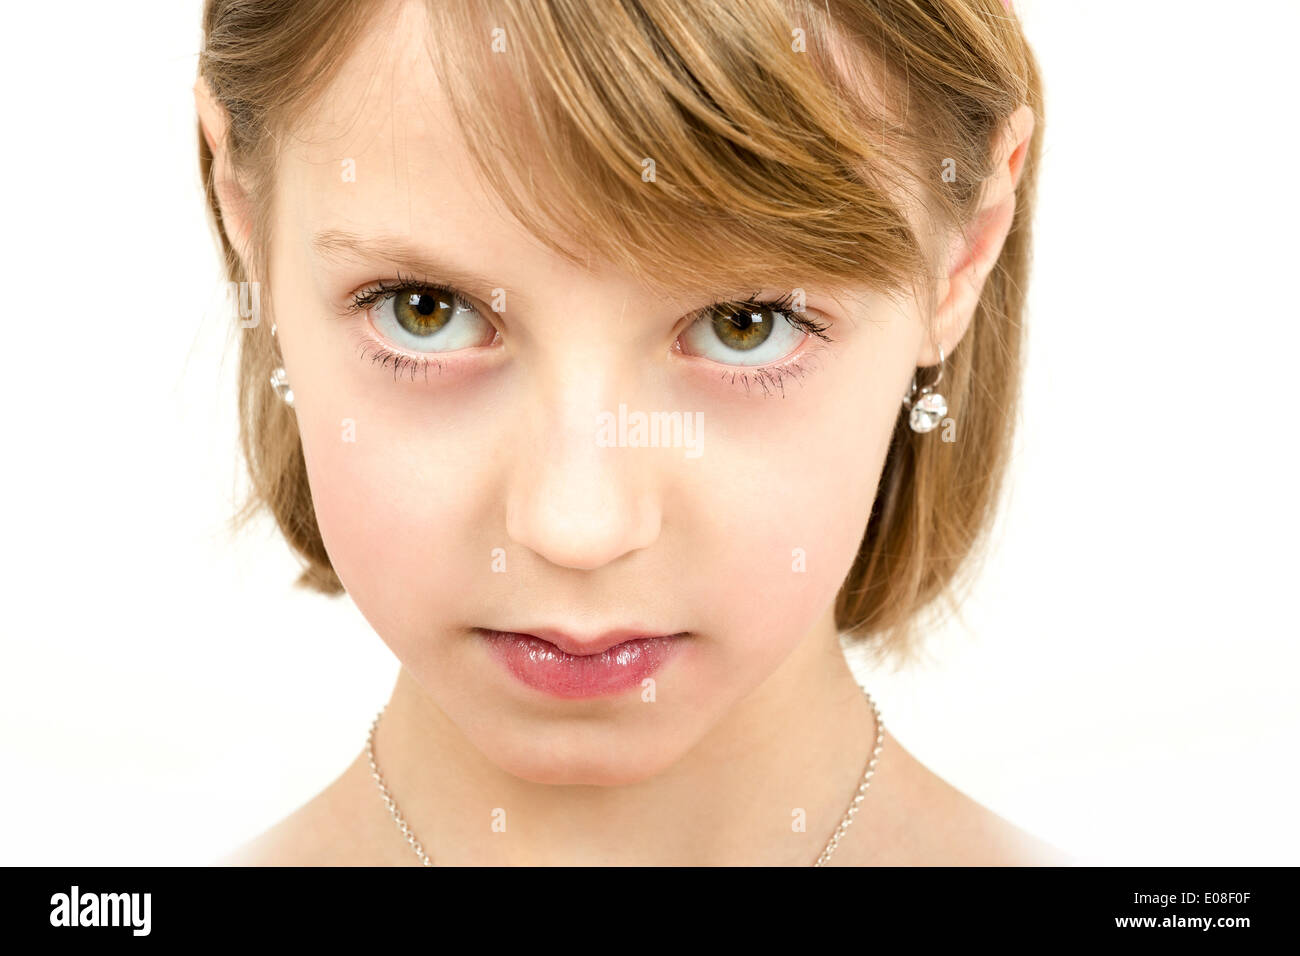 Portrait de jeune fille belle avec de beaux yeux sur fond blanc Banque D'Images